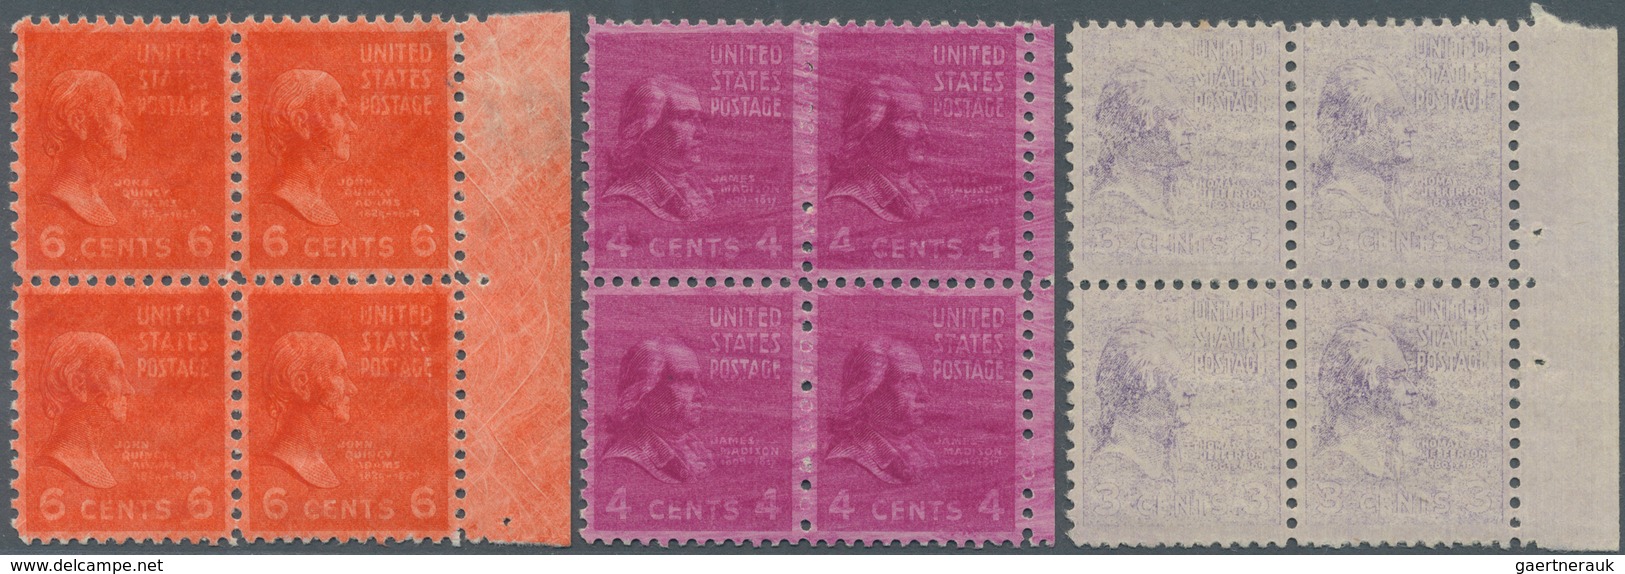 24365 Vereinigte Staaten von Amerika: 1860/1950, interesting lot of ca. 250 letters, postcards, postal sta